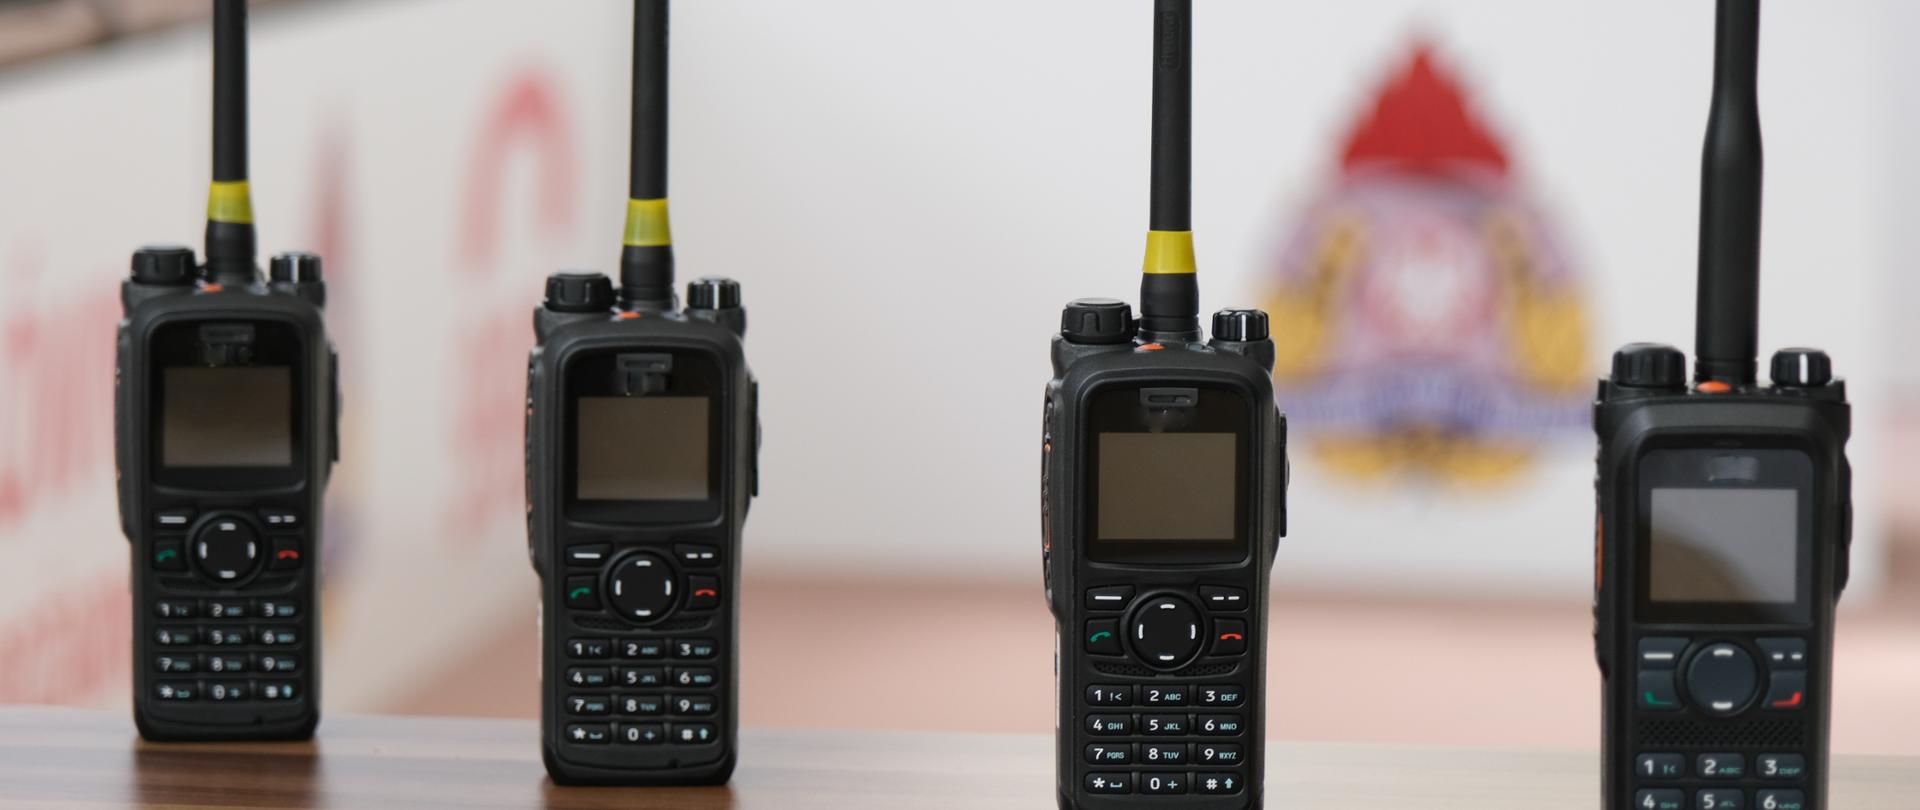 Na zdjęciu widać cztery radiotelefony koloru czarnego, w tle rozmyty logotyp PSP.